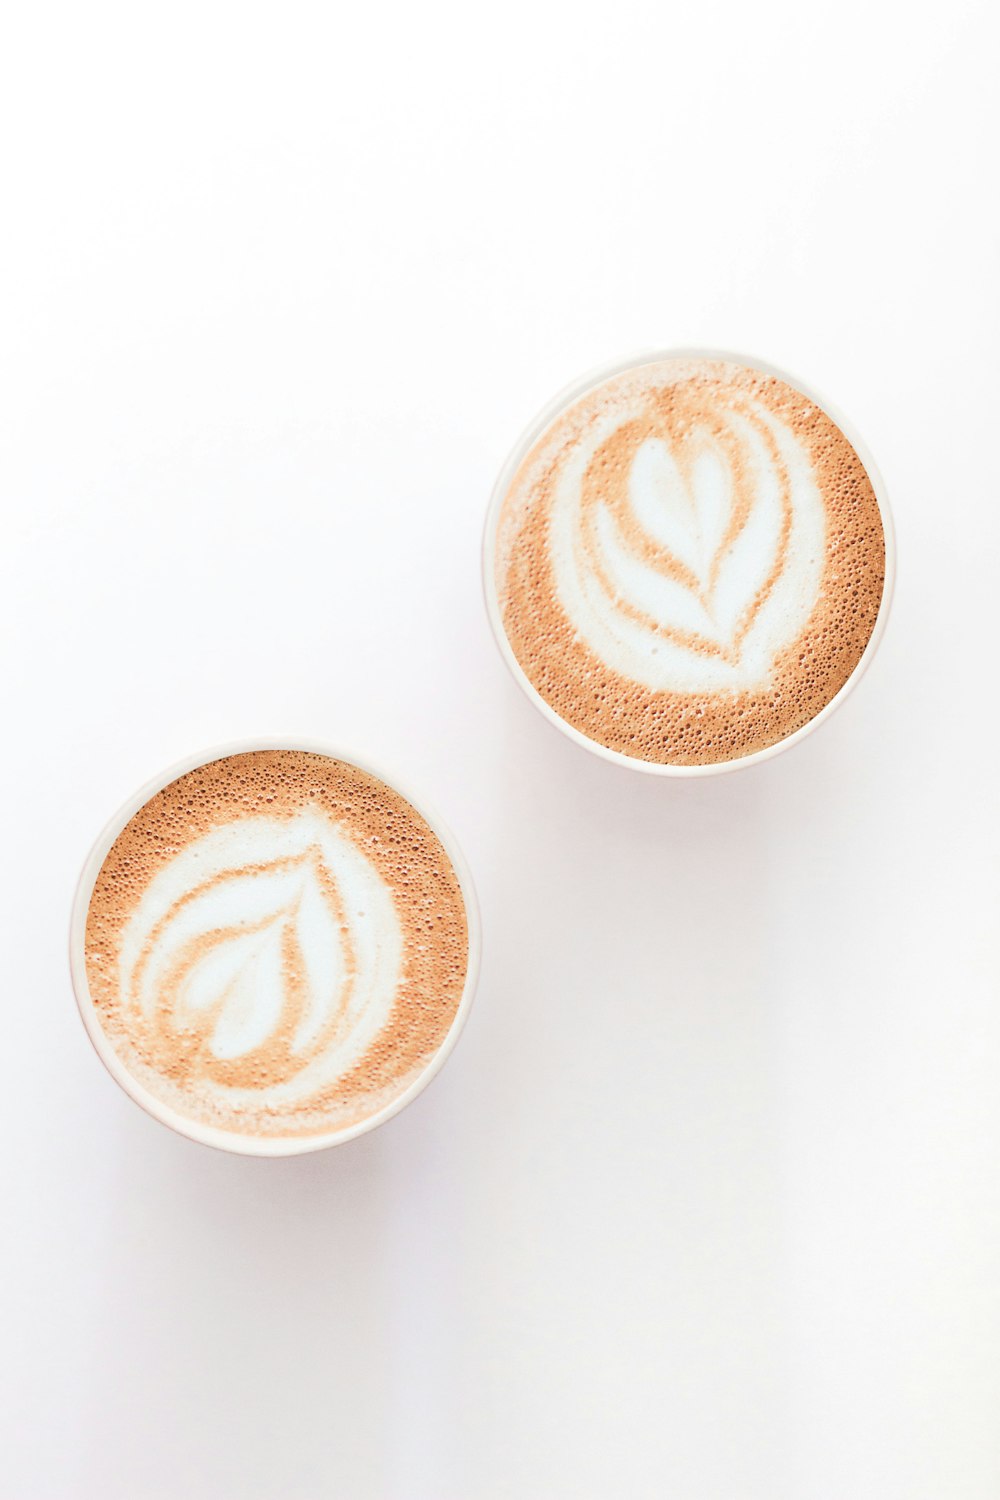 brauner und weißer Cappuccino in Herzform